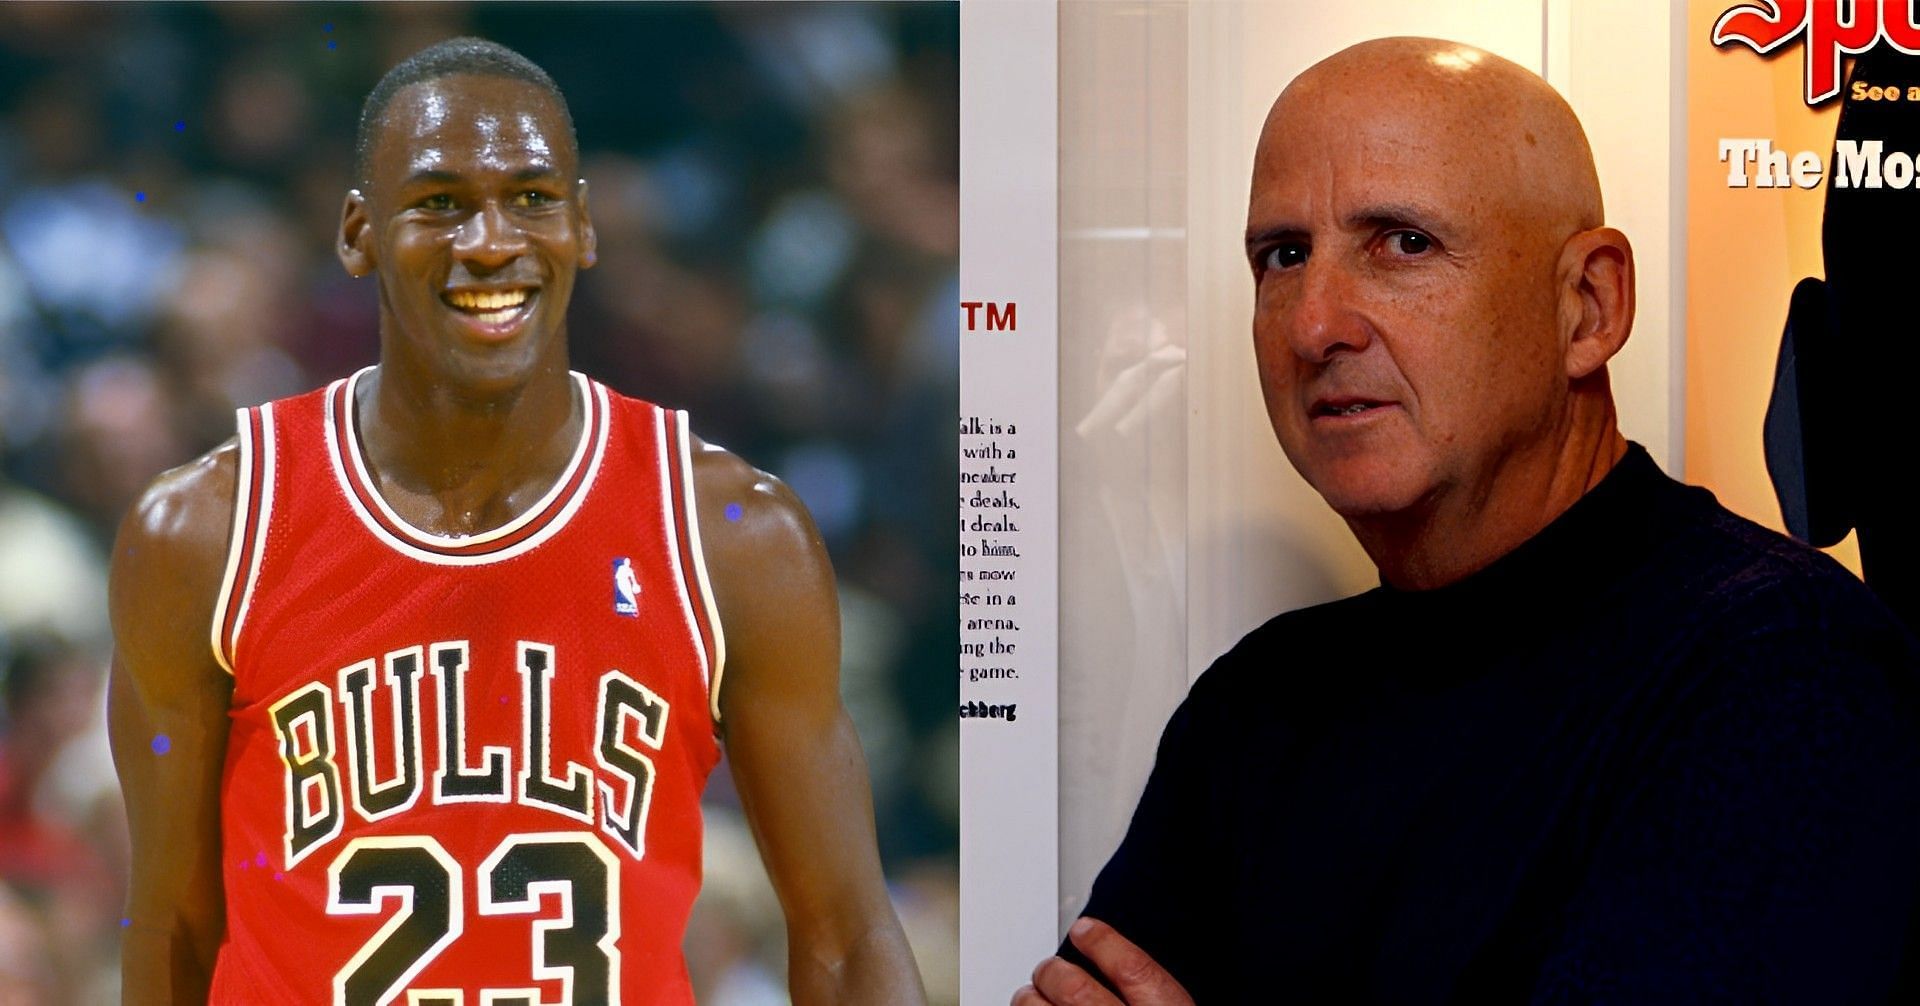 Chicago Bulls legend Michael Jordan and his agent, David Falk